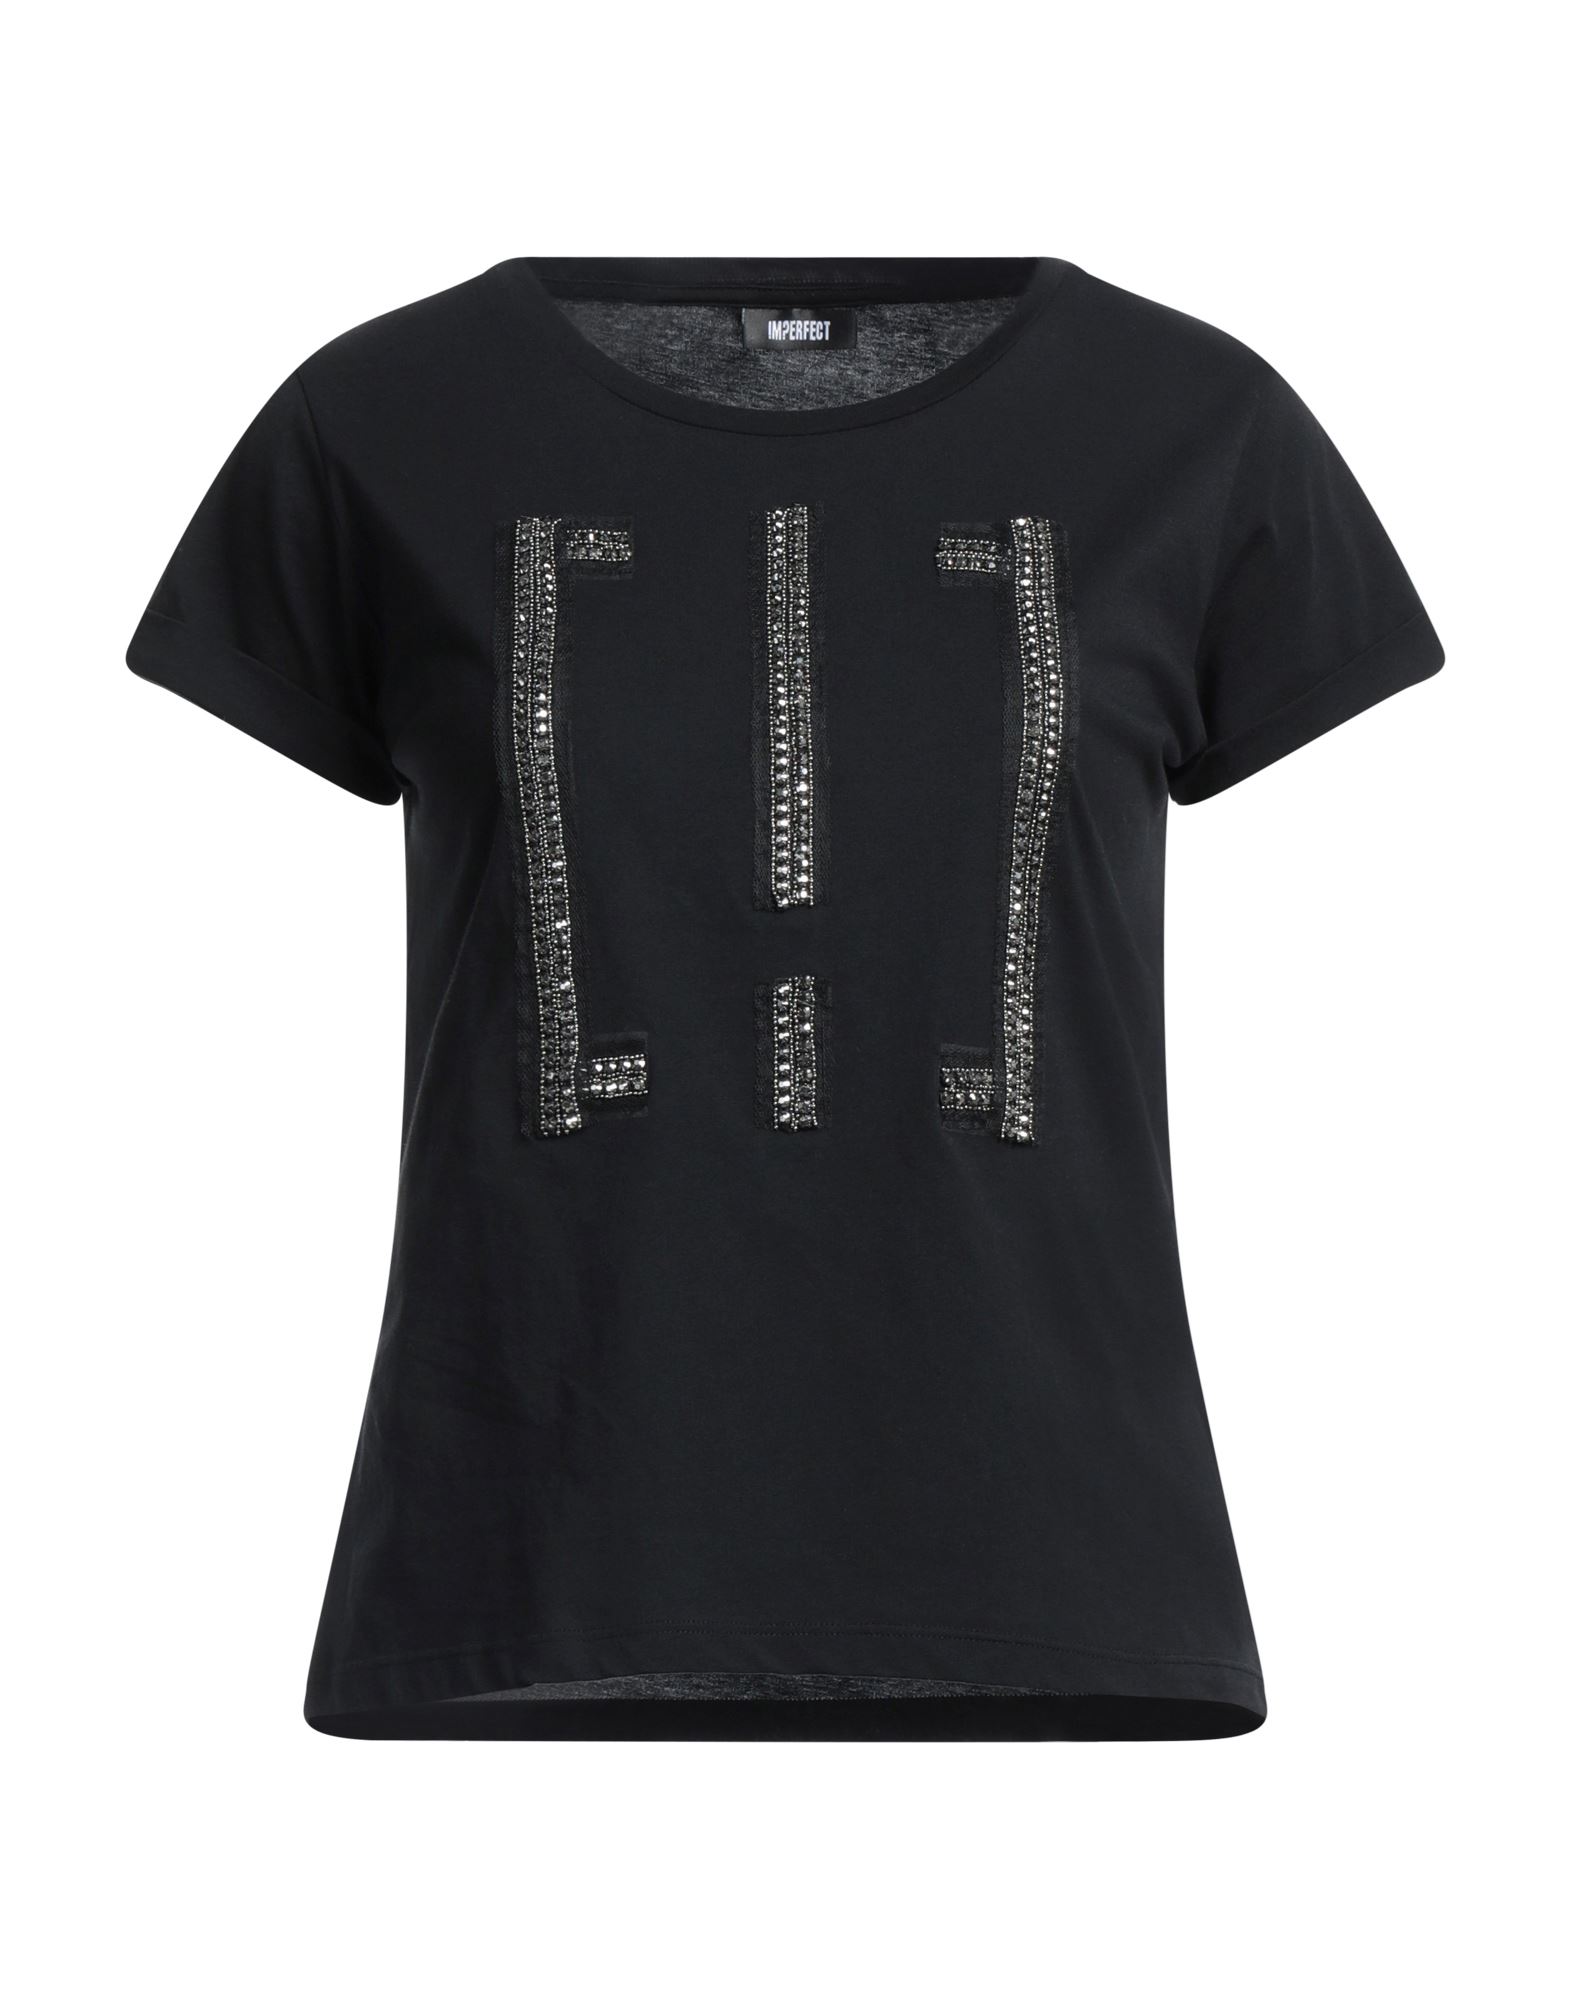 !m?erfect Woman T-shirt Black Size Xs Cotton